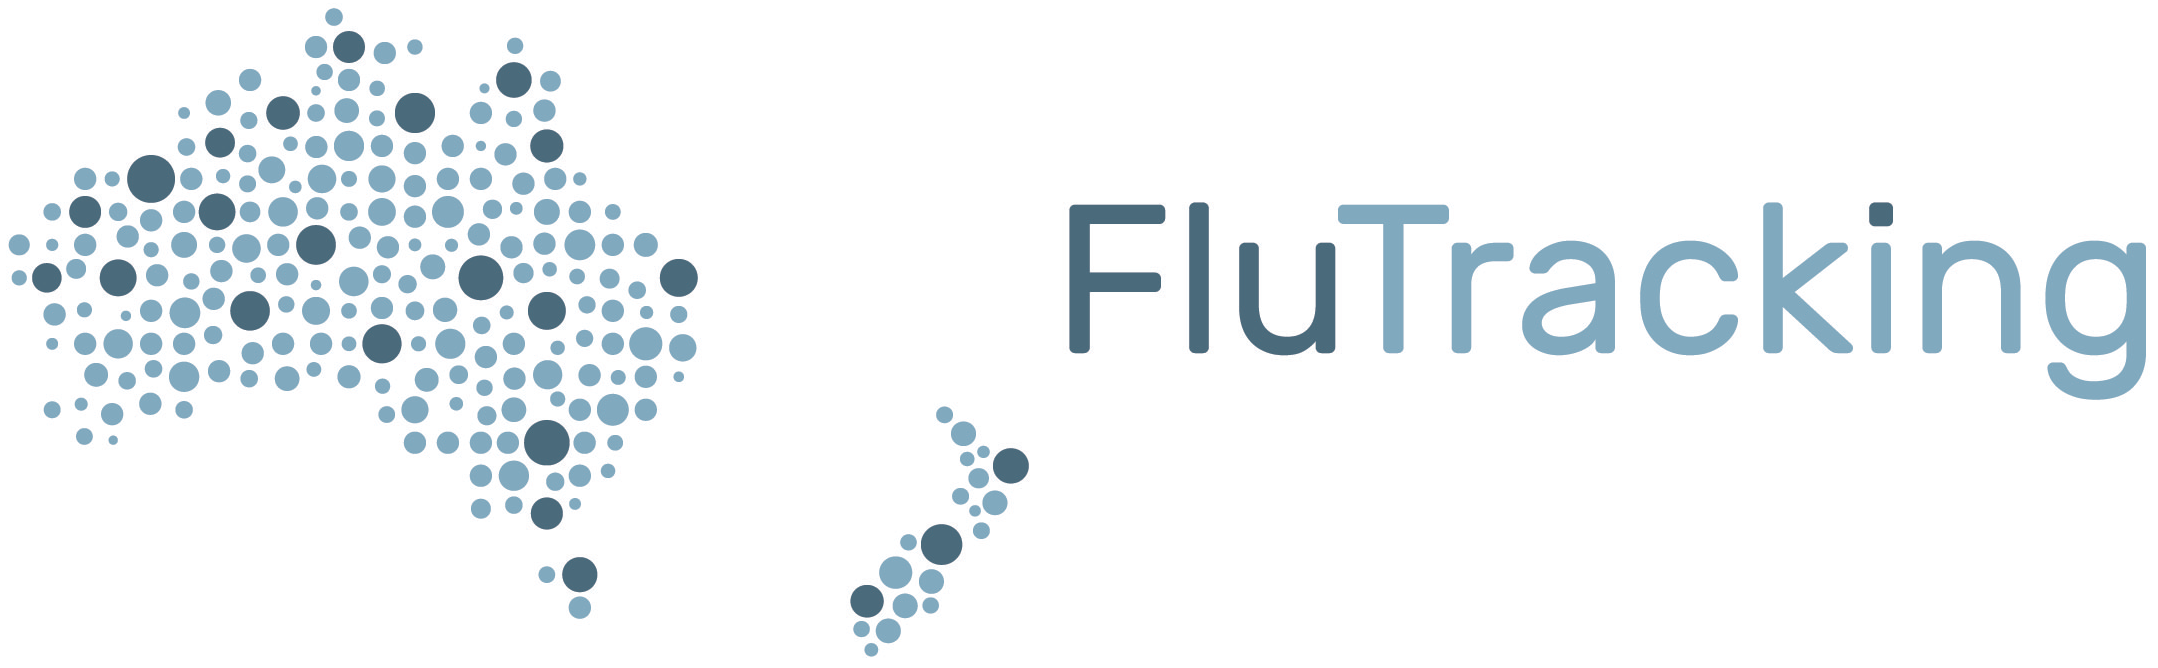 Flutracking logo